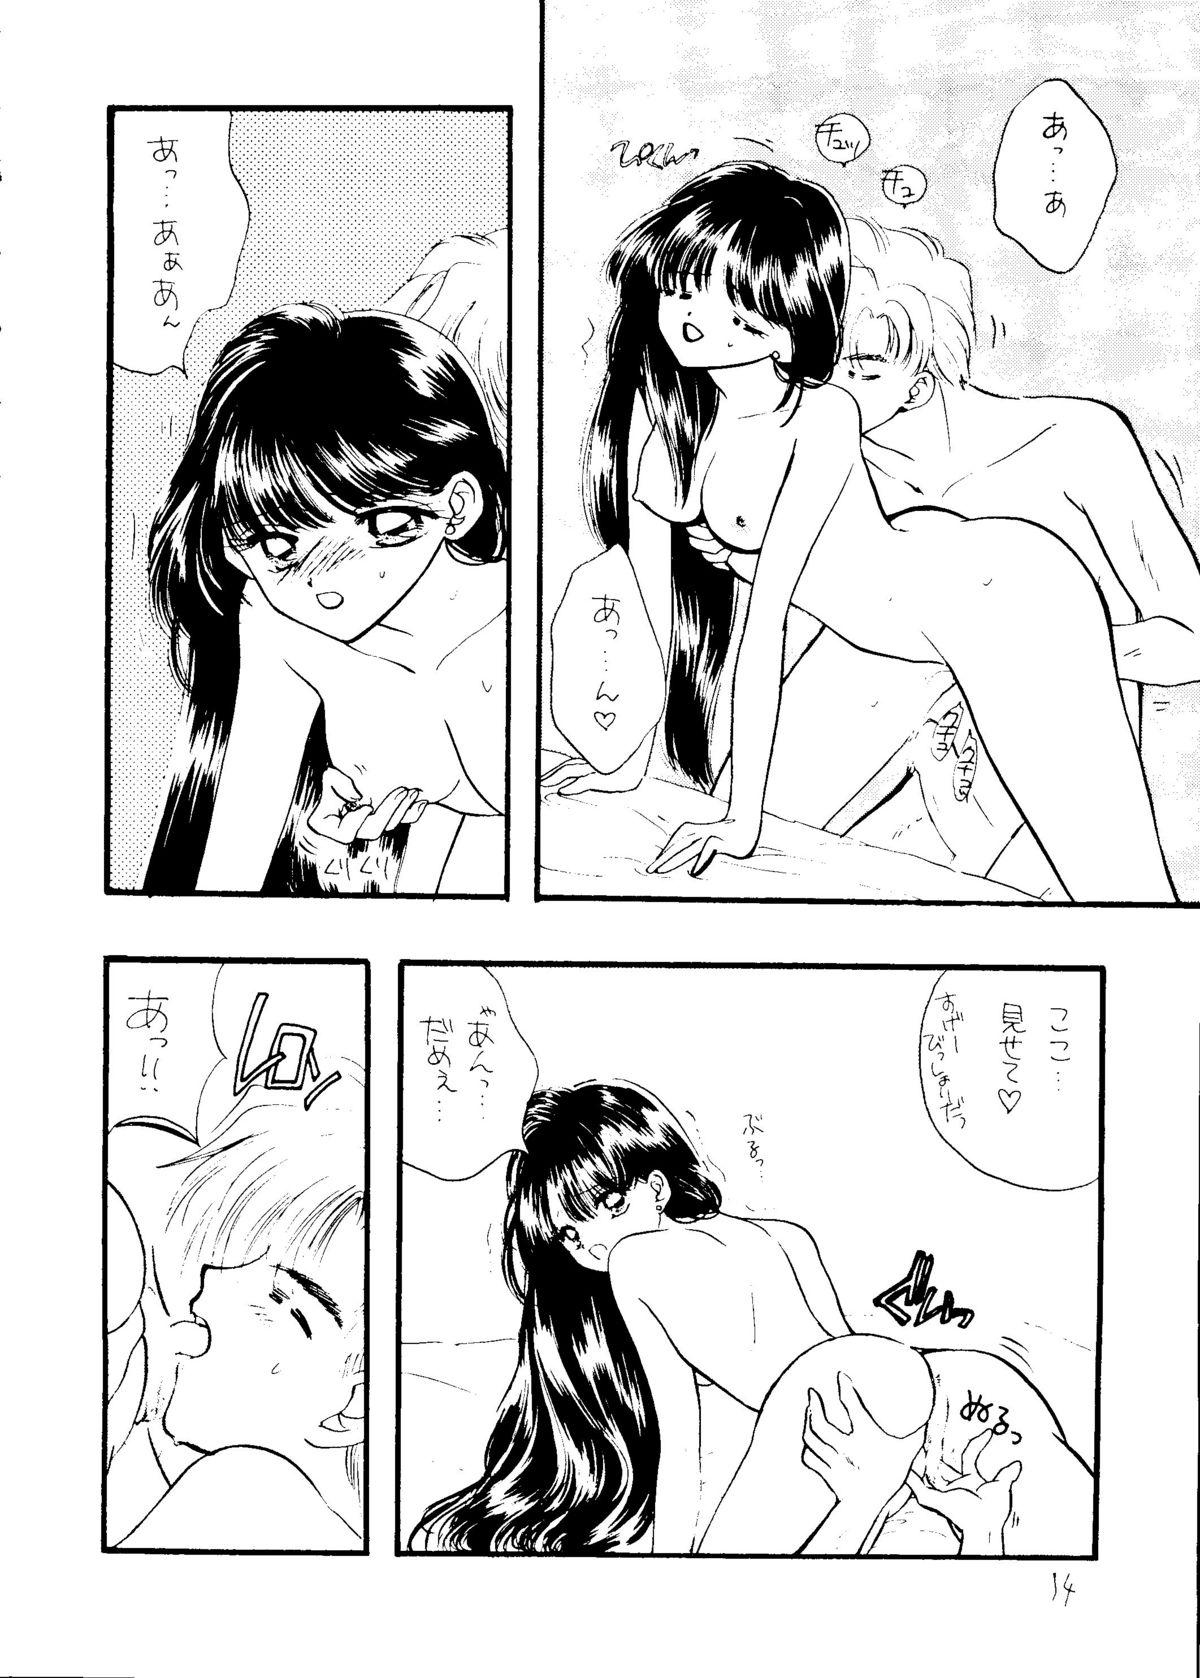 Tattoos Ayakaritai65 - Sailor moon French - Page 13